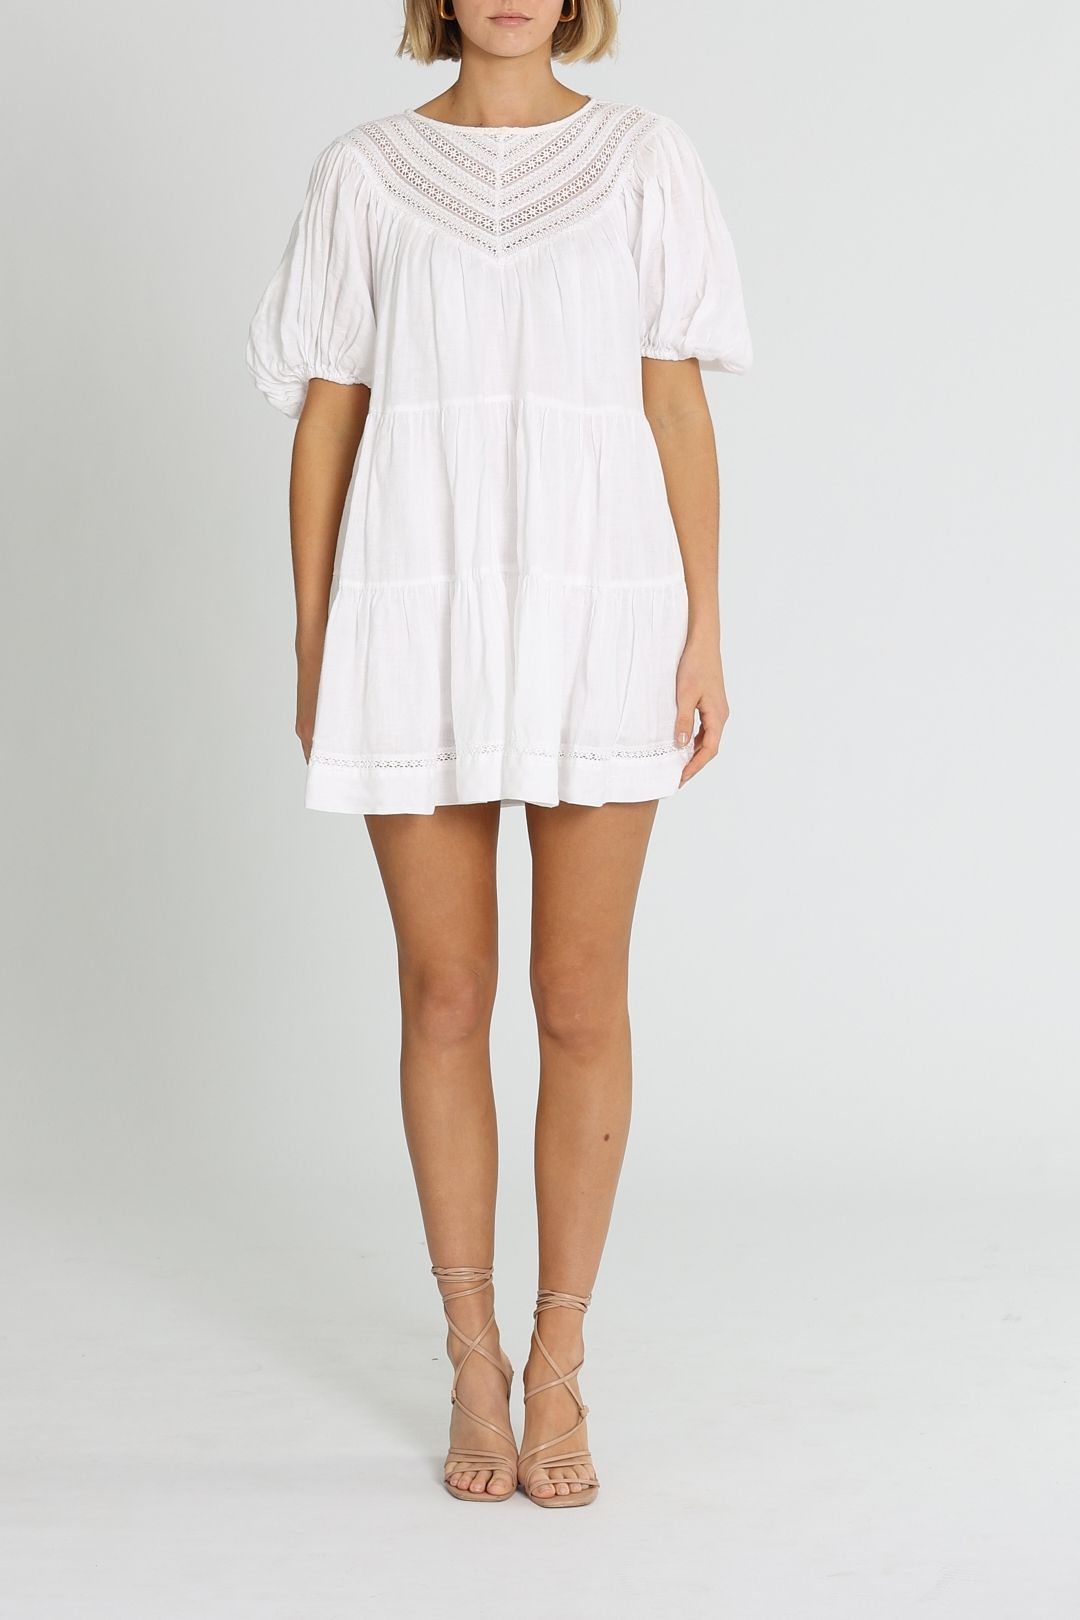 Shona Joy Adriana Mini Dress White